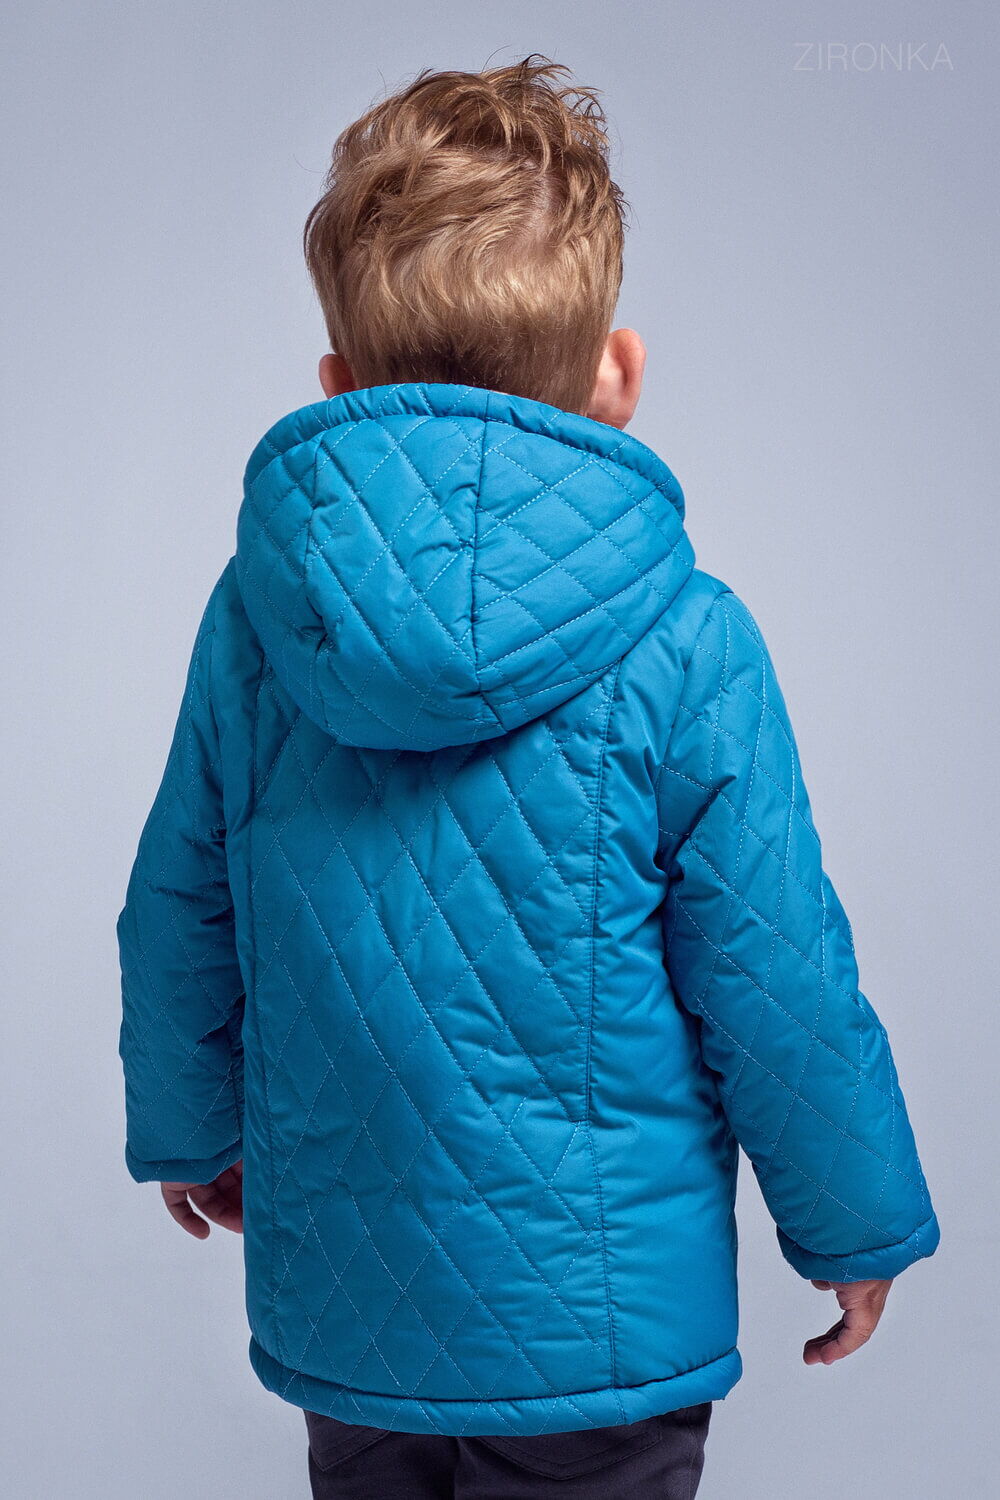 Куртка для мальчика Zironka стеганая синяя 2054-2 - фотография